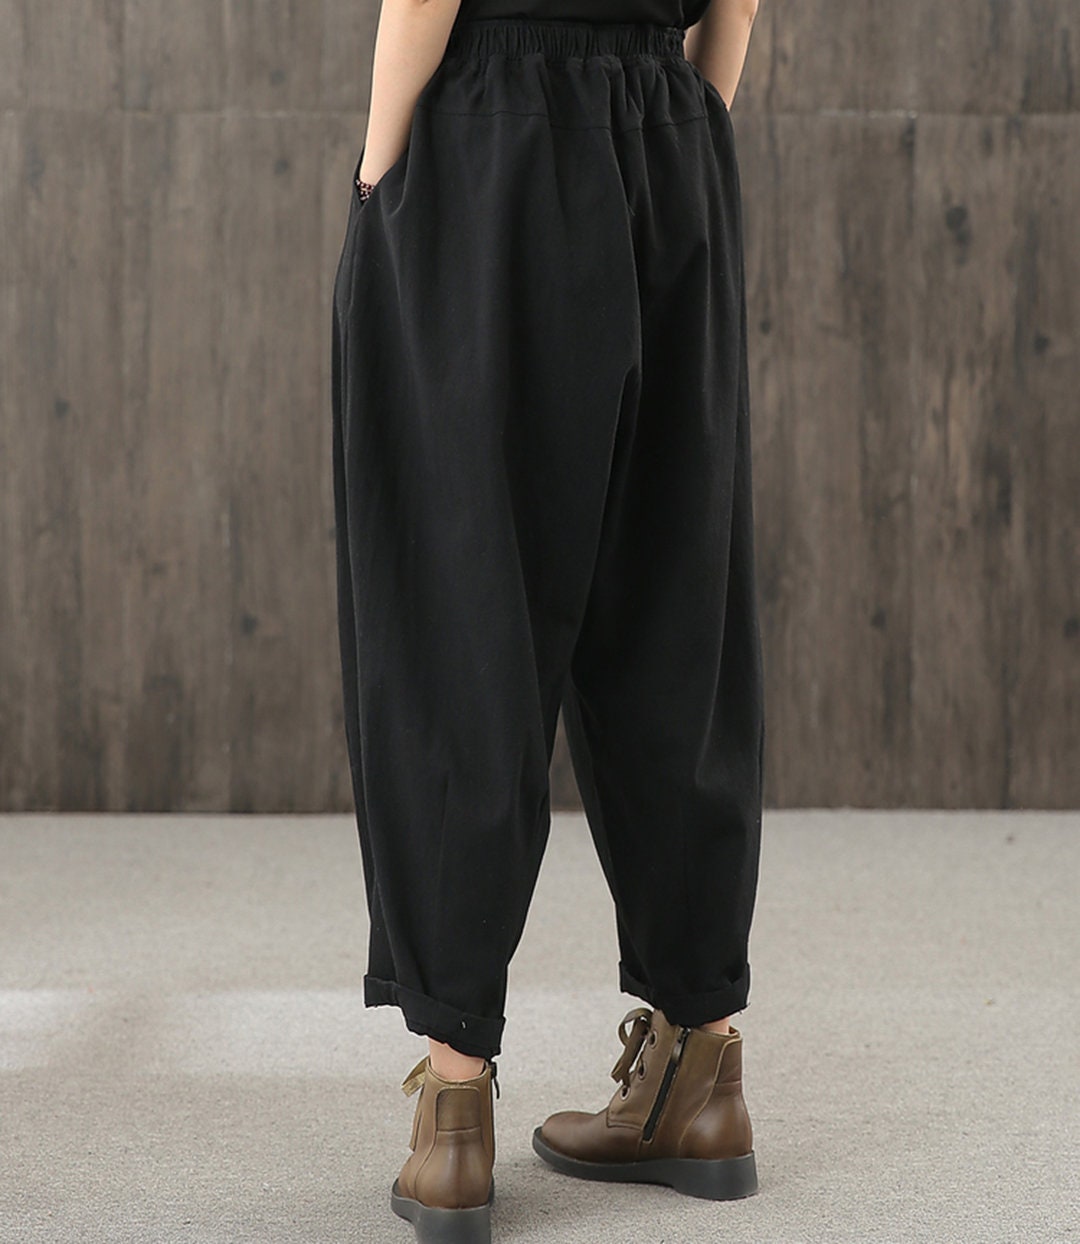 Large size women's casual pants retro loose pants cotton | Etsy